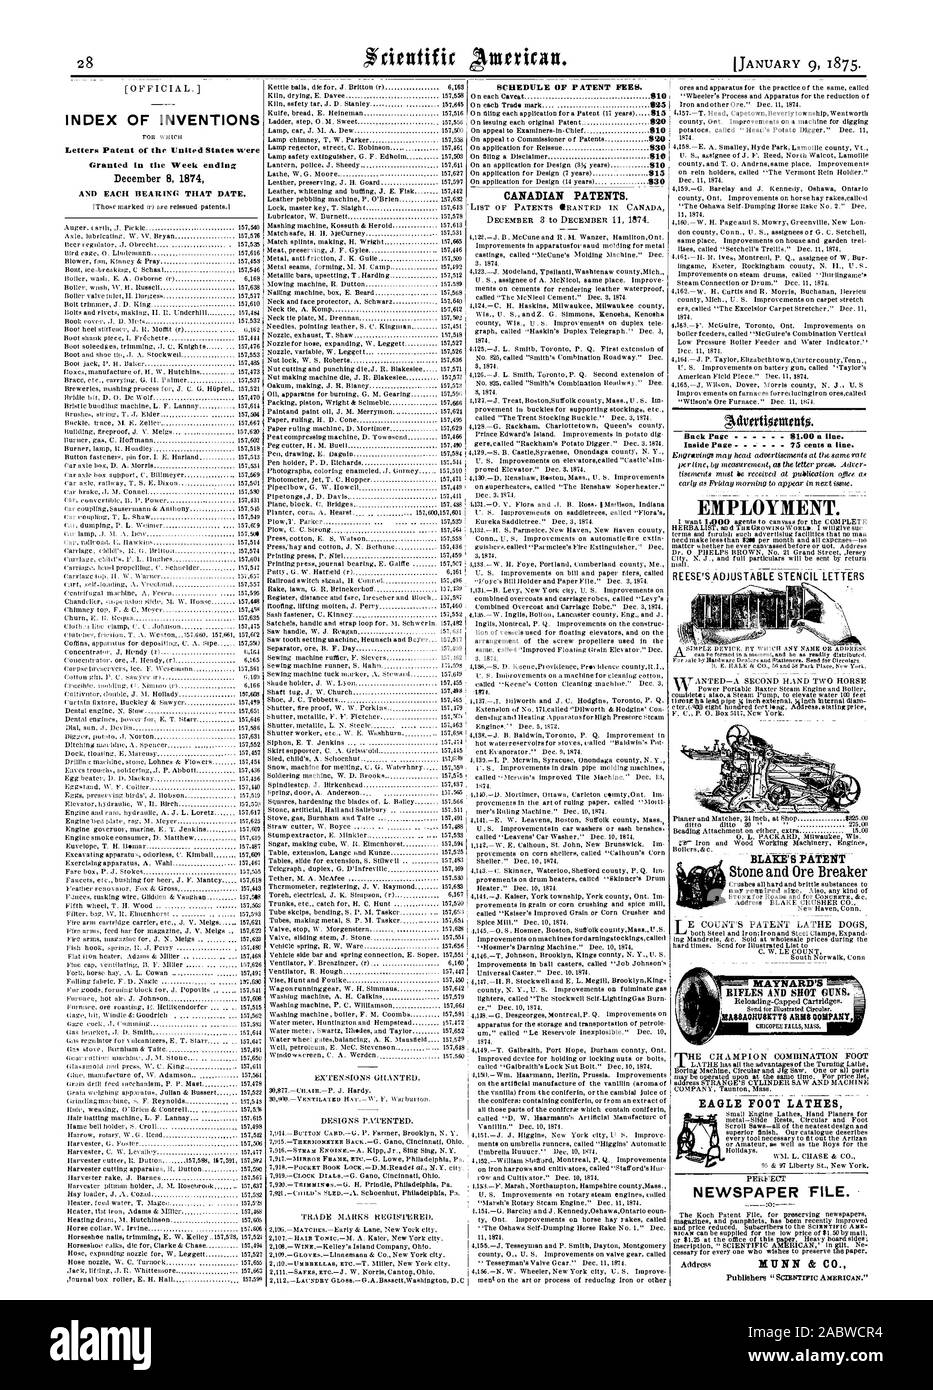 El calendario de las tasas de patentes. Índice cartas patentes de invenciones de los Estados Unidos fueron otorgadas en la semana que terminó el 8 de diciembre de 1874 Y CADA UNO DE LOS COJINETES QUE FECHA. Las patentes canadienses. Volver a la página anterior 81.00 una línea. Dentro de la página 75 centavos una línea. El empleo. EREES 'S GALERÍA AJUSTABLE CARTAS EAGLE TORNOS PIE periódico 'archivo. BLAKE'S PATENTE, Scientific American, 1875-01-09 Foto de stock